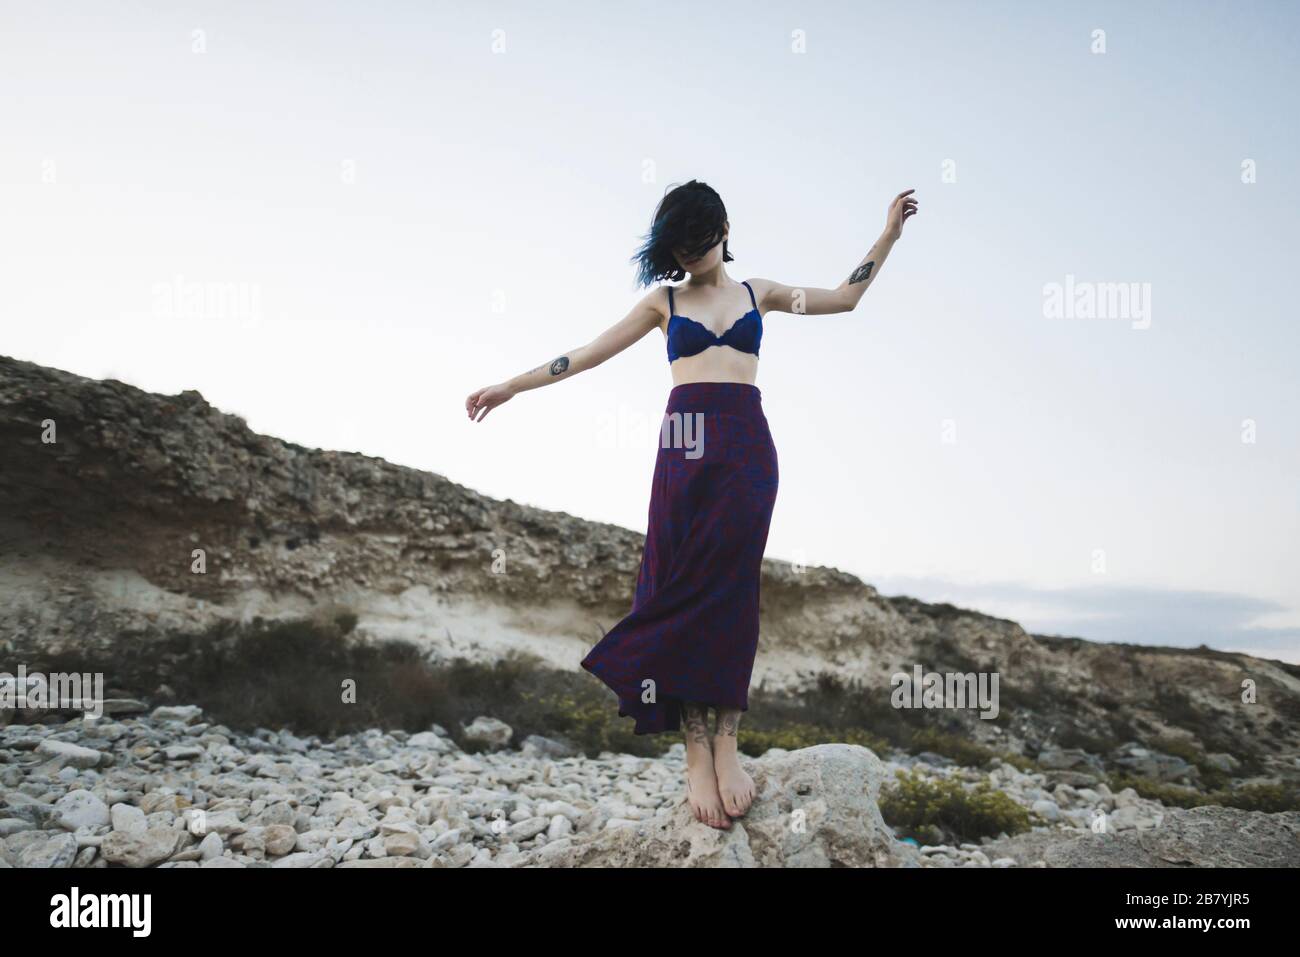 Jeune femme en soutien-gorge et jupe debout sur le rocher Banque D'Images